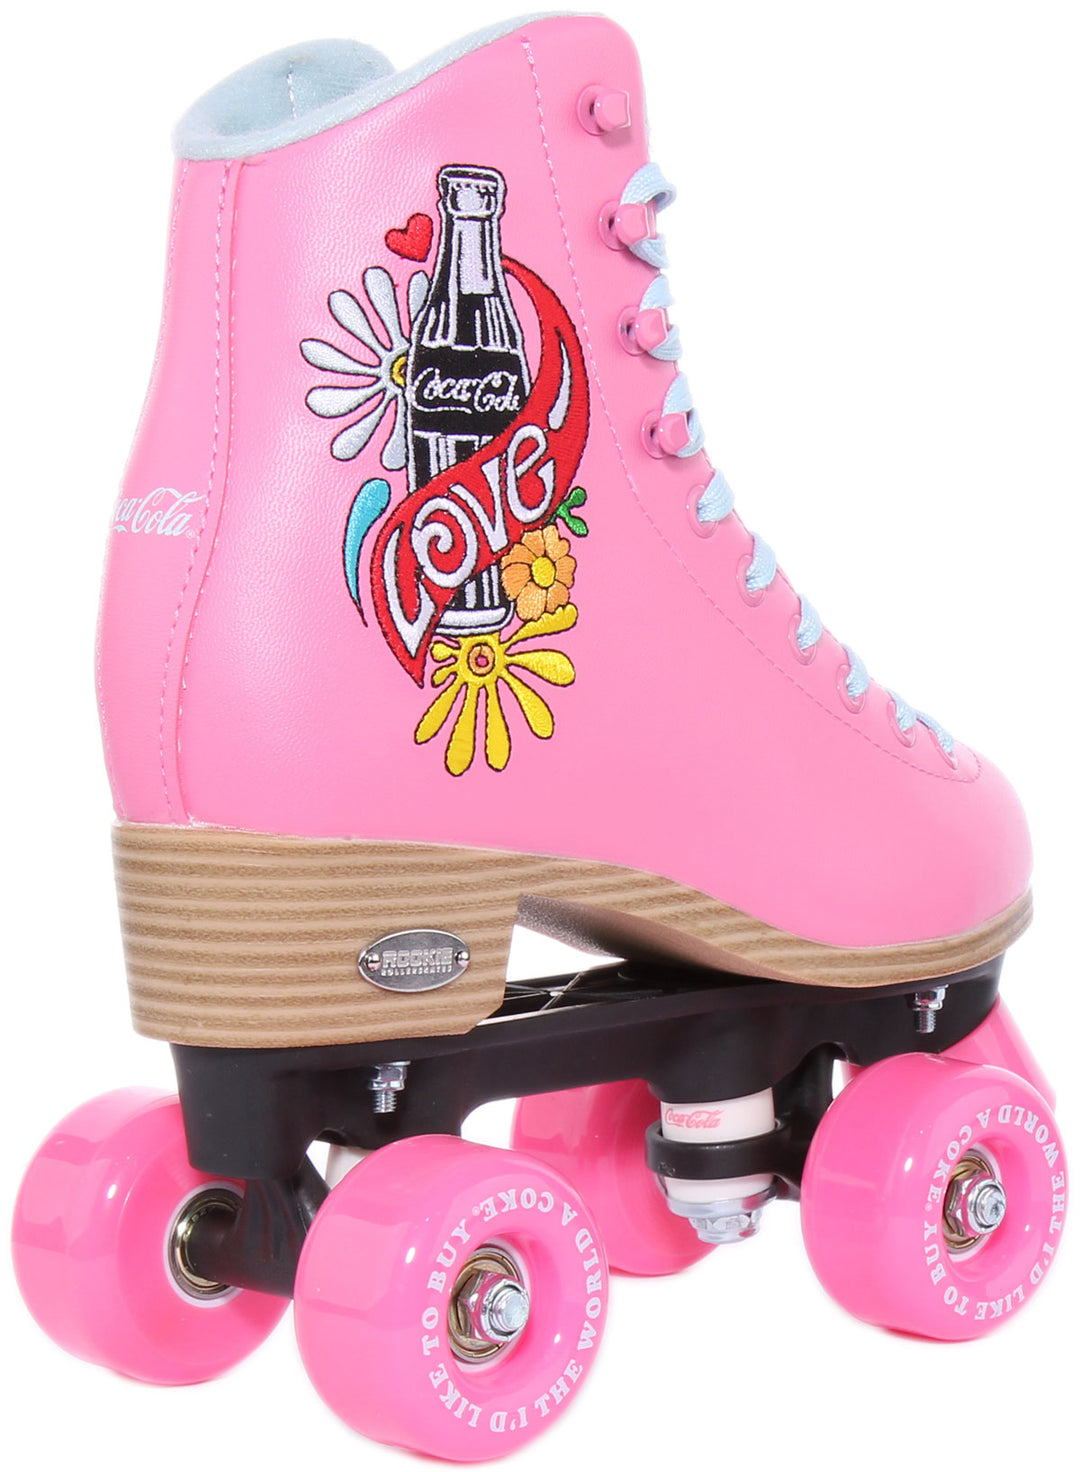 Rookie X Coca Cola Love Frauen Schnürung Rollerskates Rosa